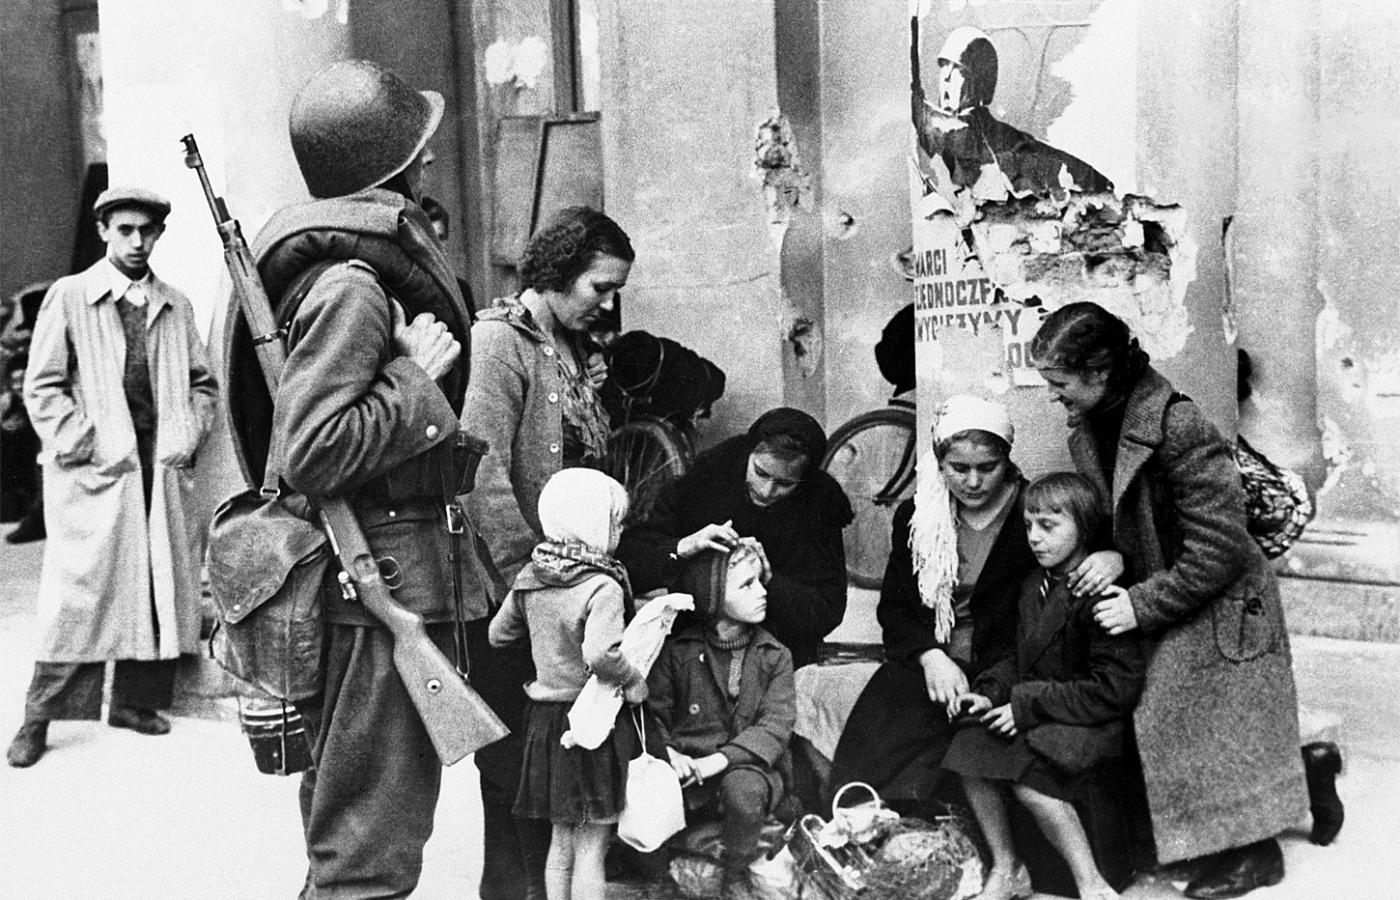 Żołnierz polski i uchodźcy na ulicach Warszawy, wrzesień 1939 r.